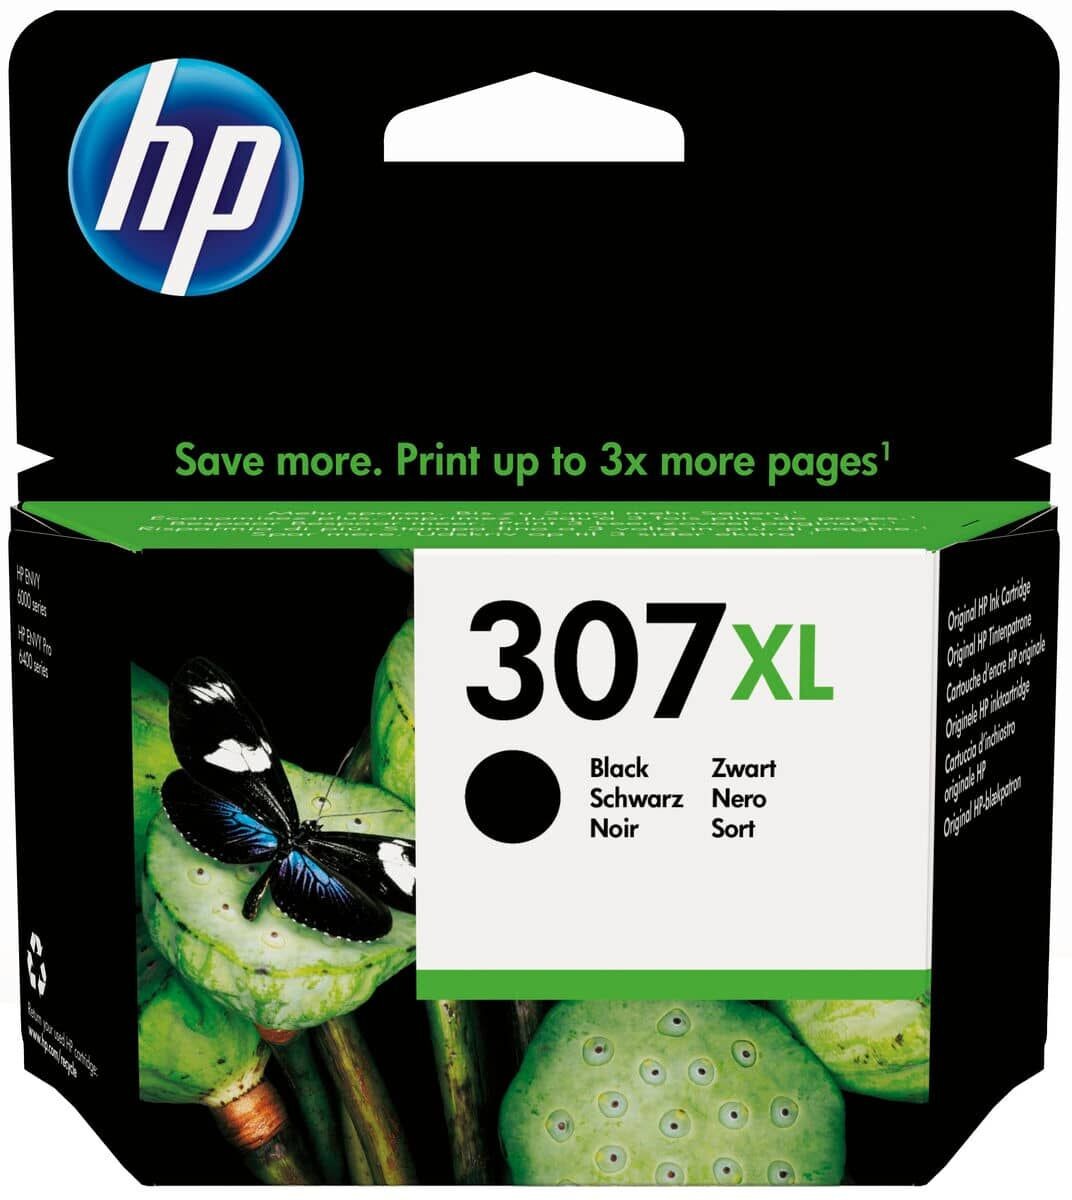 HP 301XL cartouche d'encre noir grande capacité authentique - HP